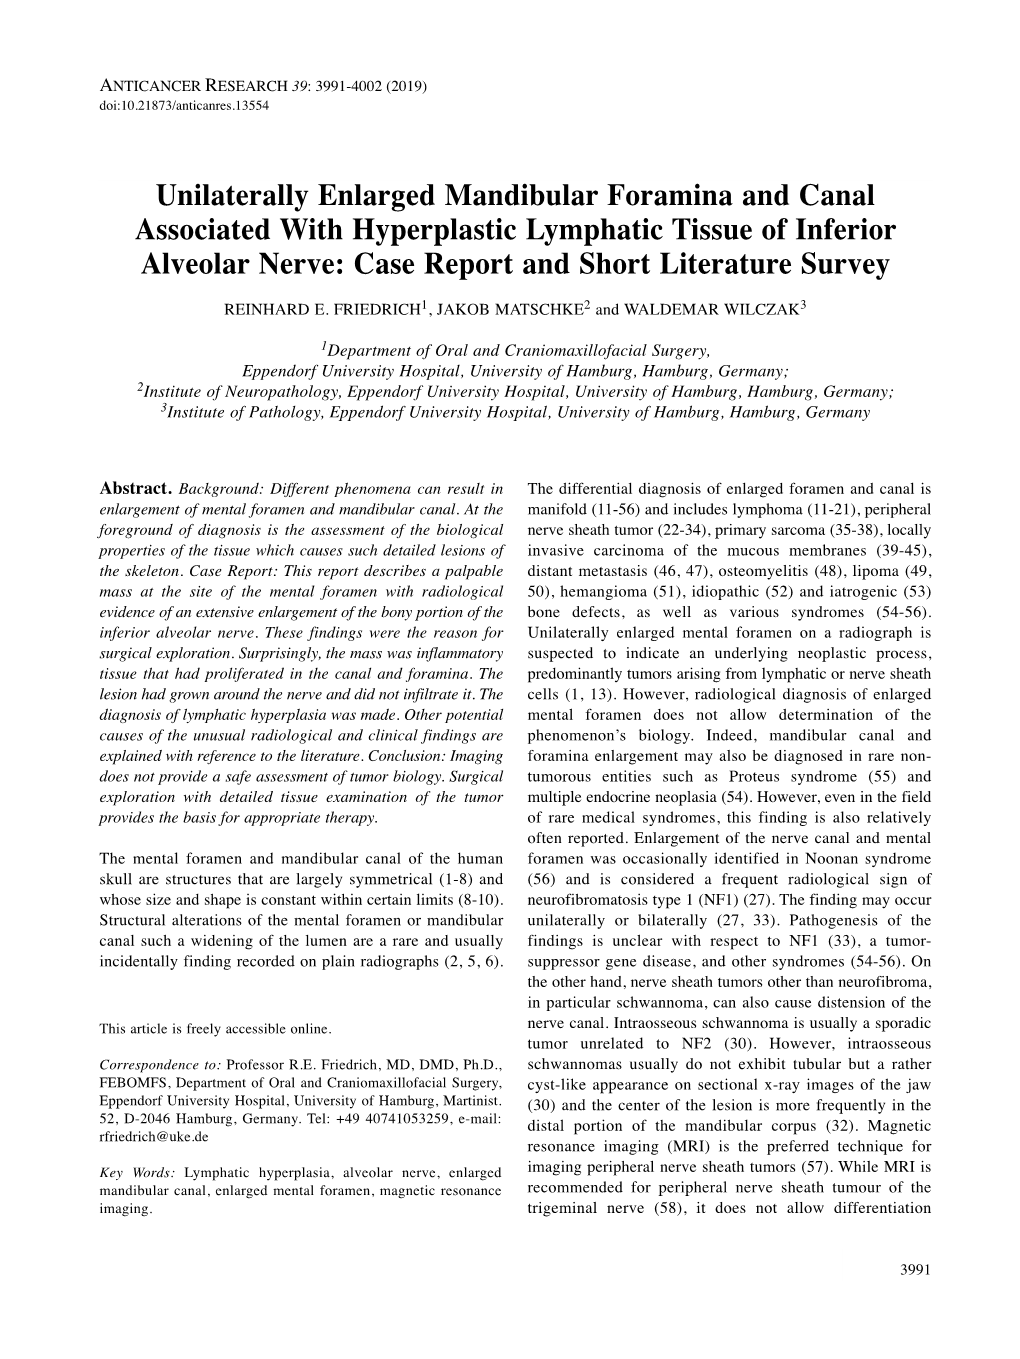 Unilaterally Enlarged Mandibular Foramina and Canal Associated